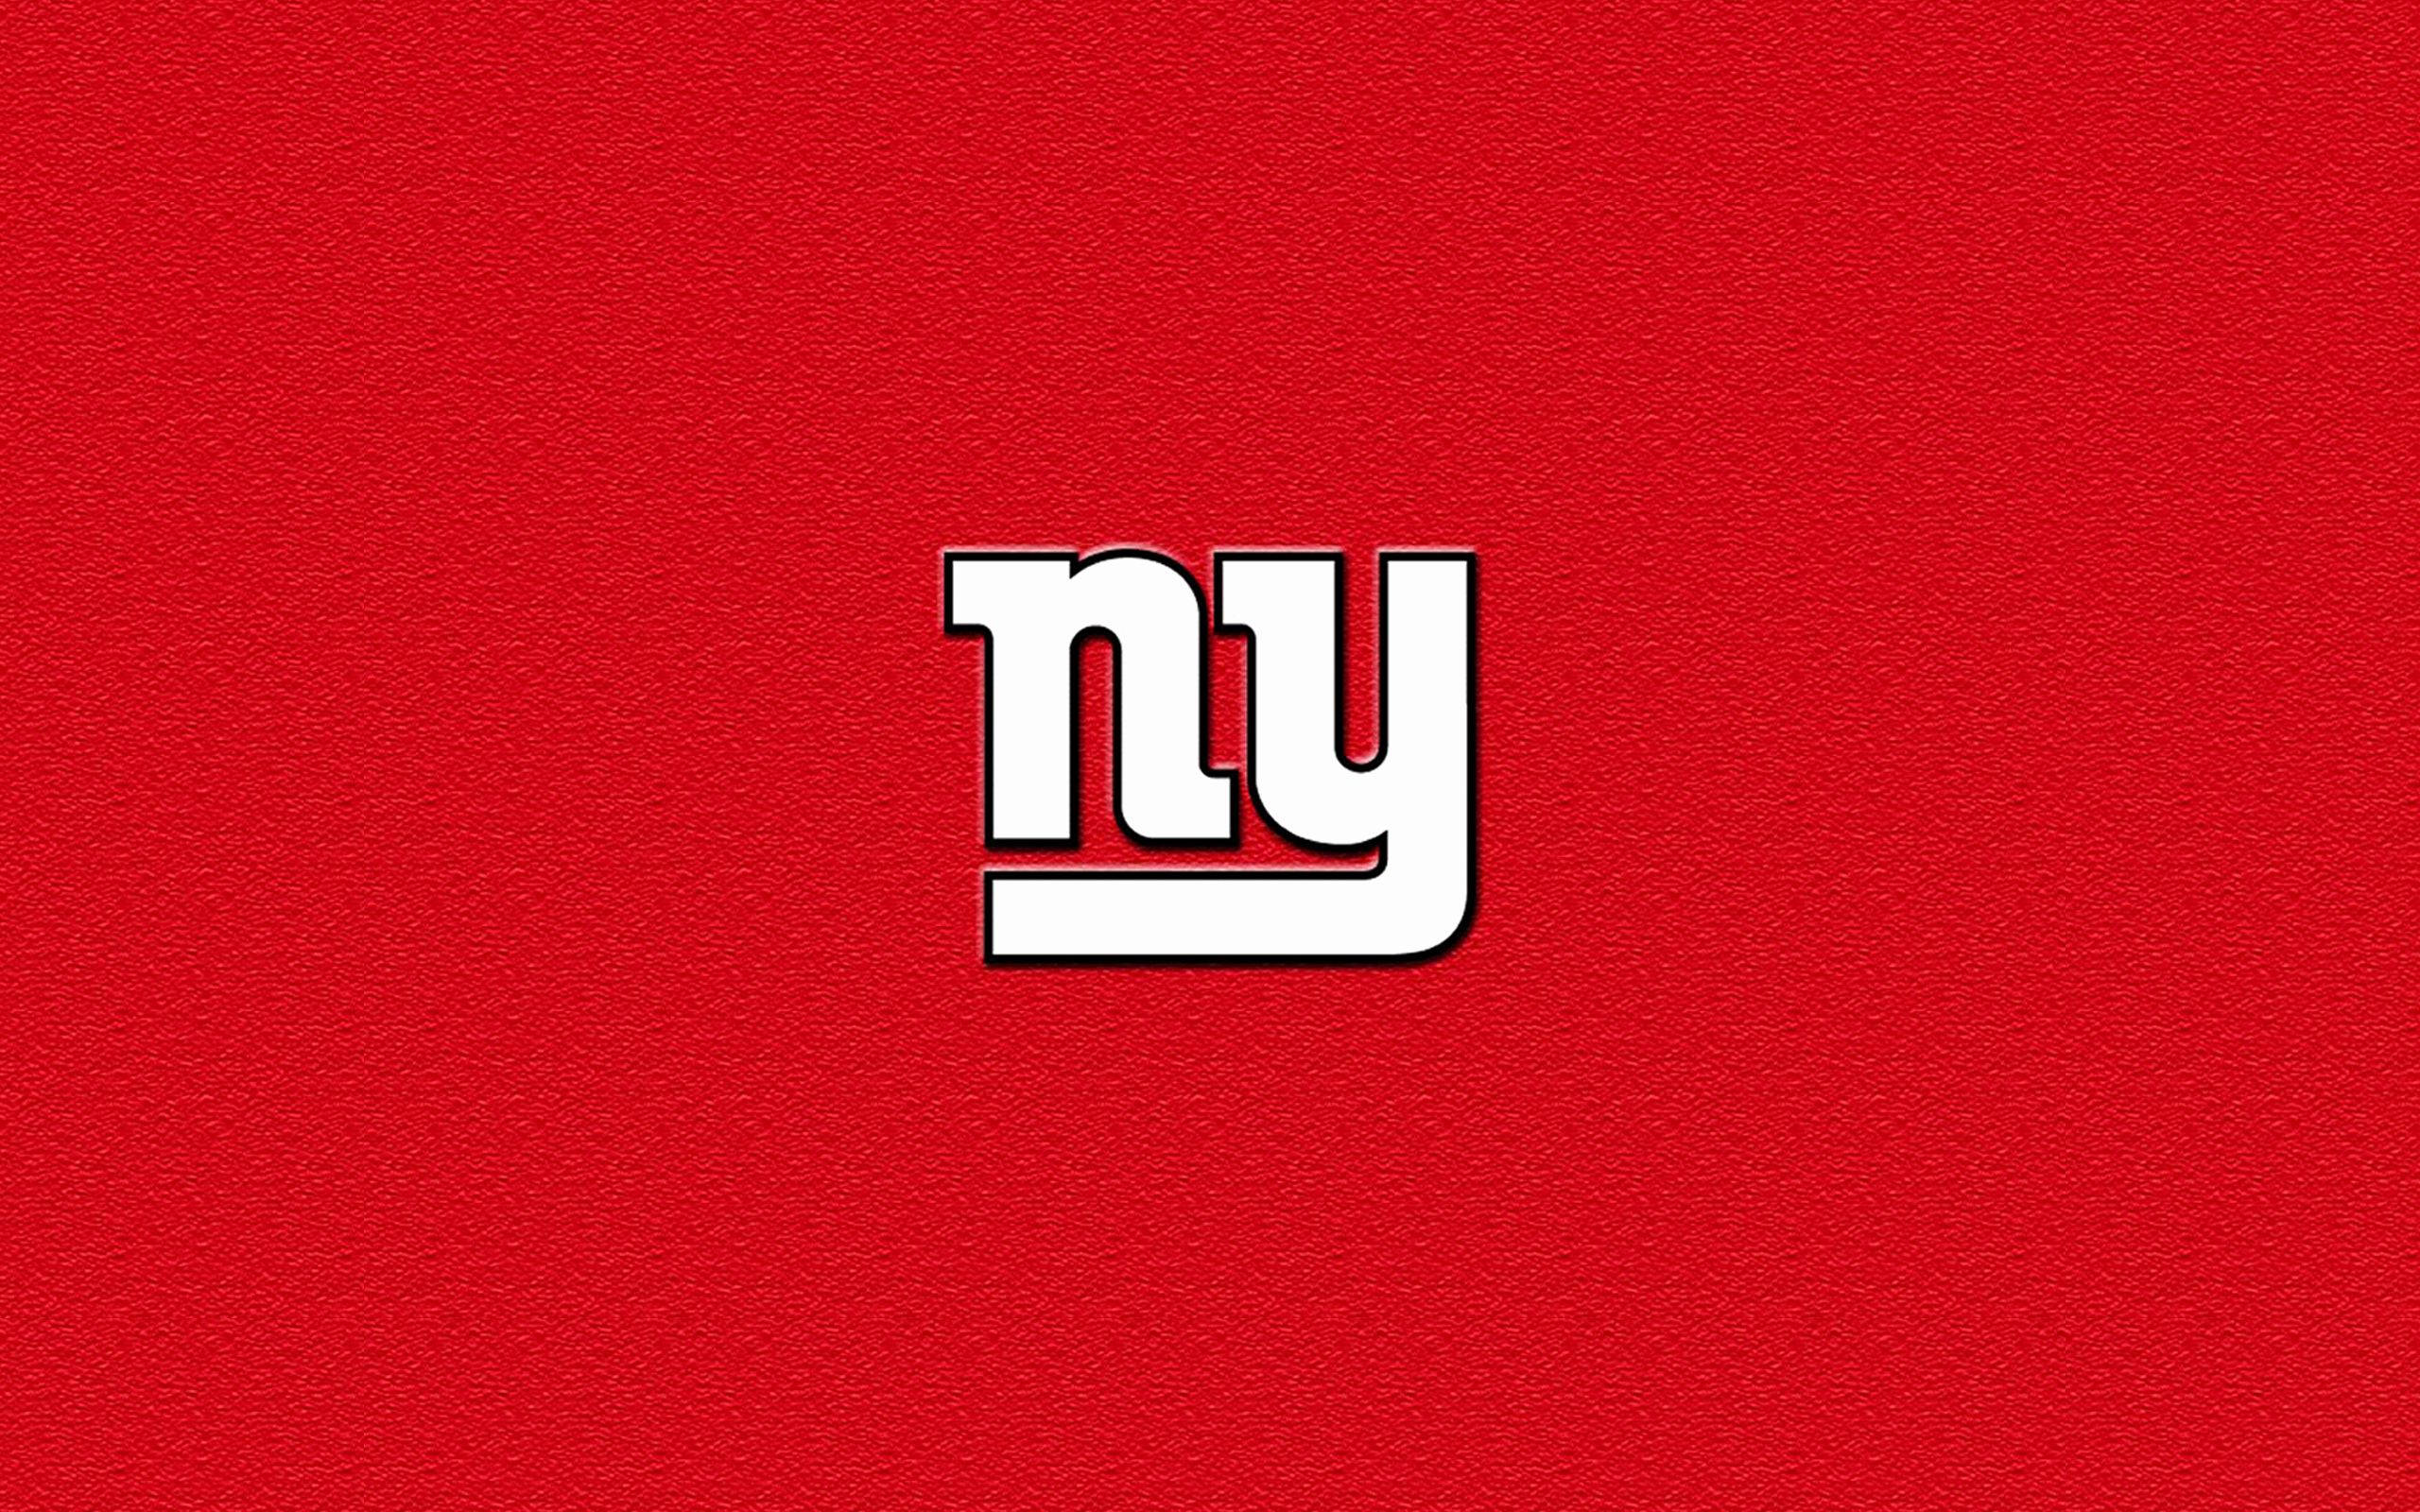 New York Giants Logo Red Background Wallpaper